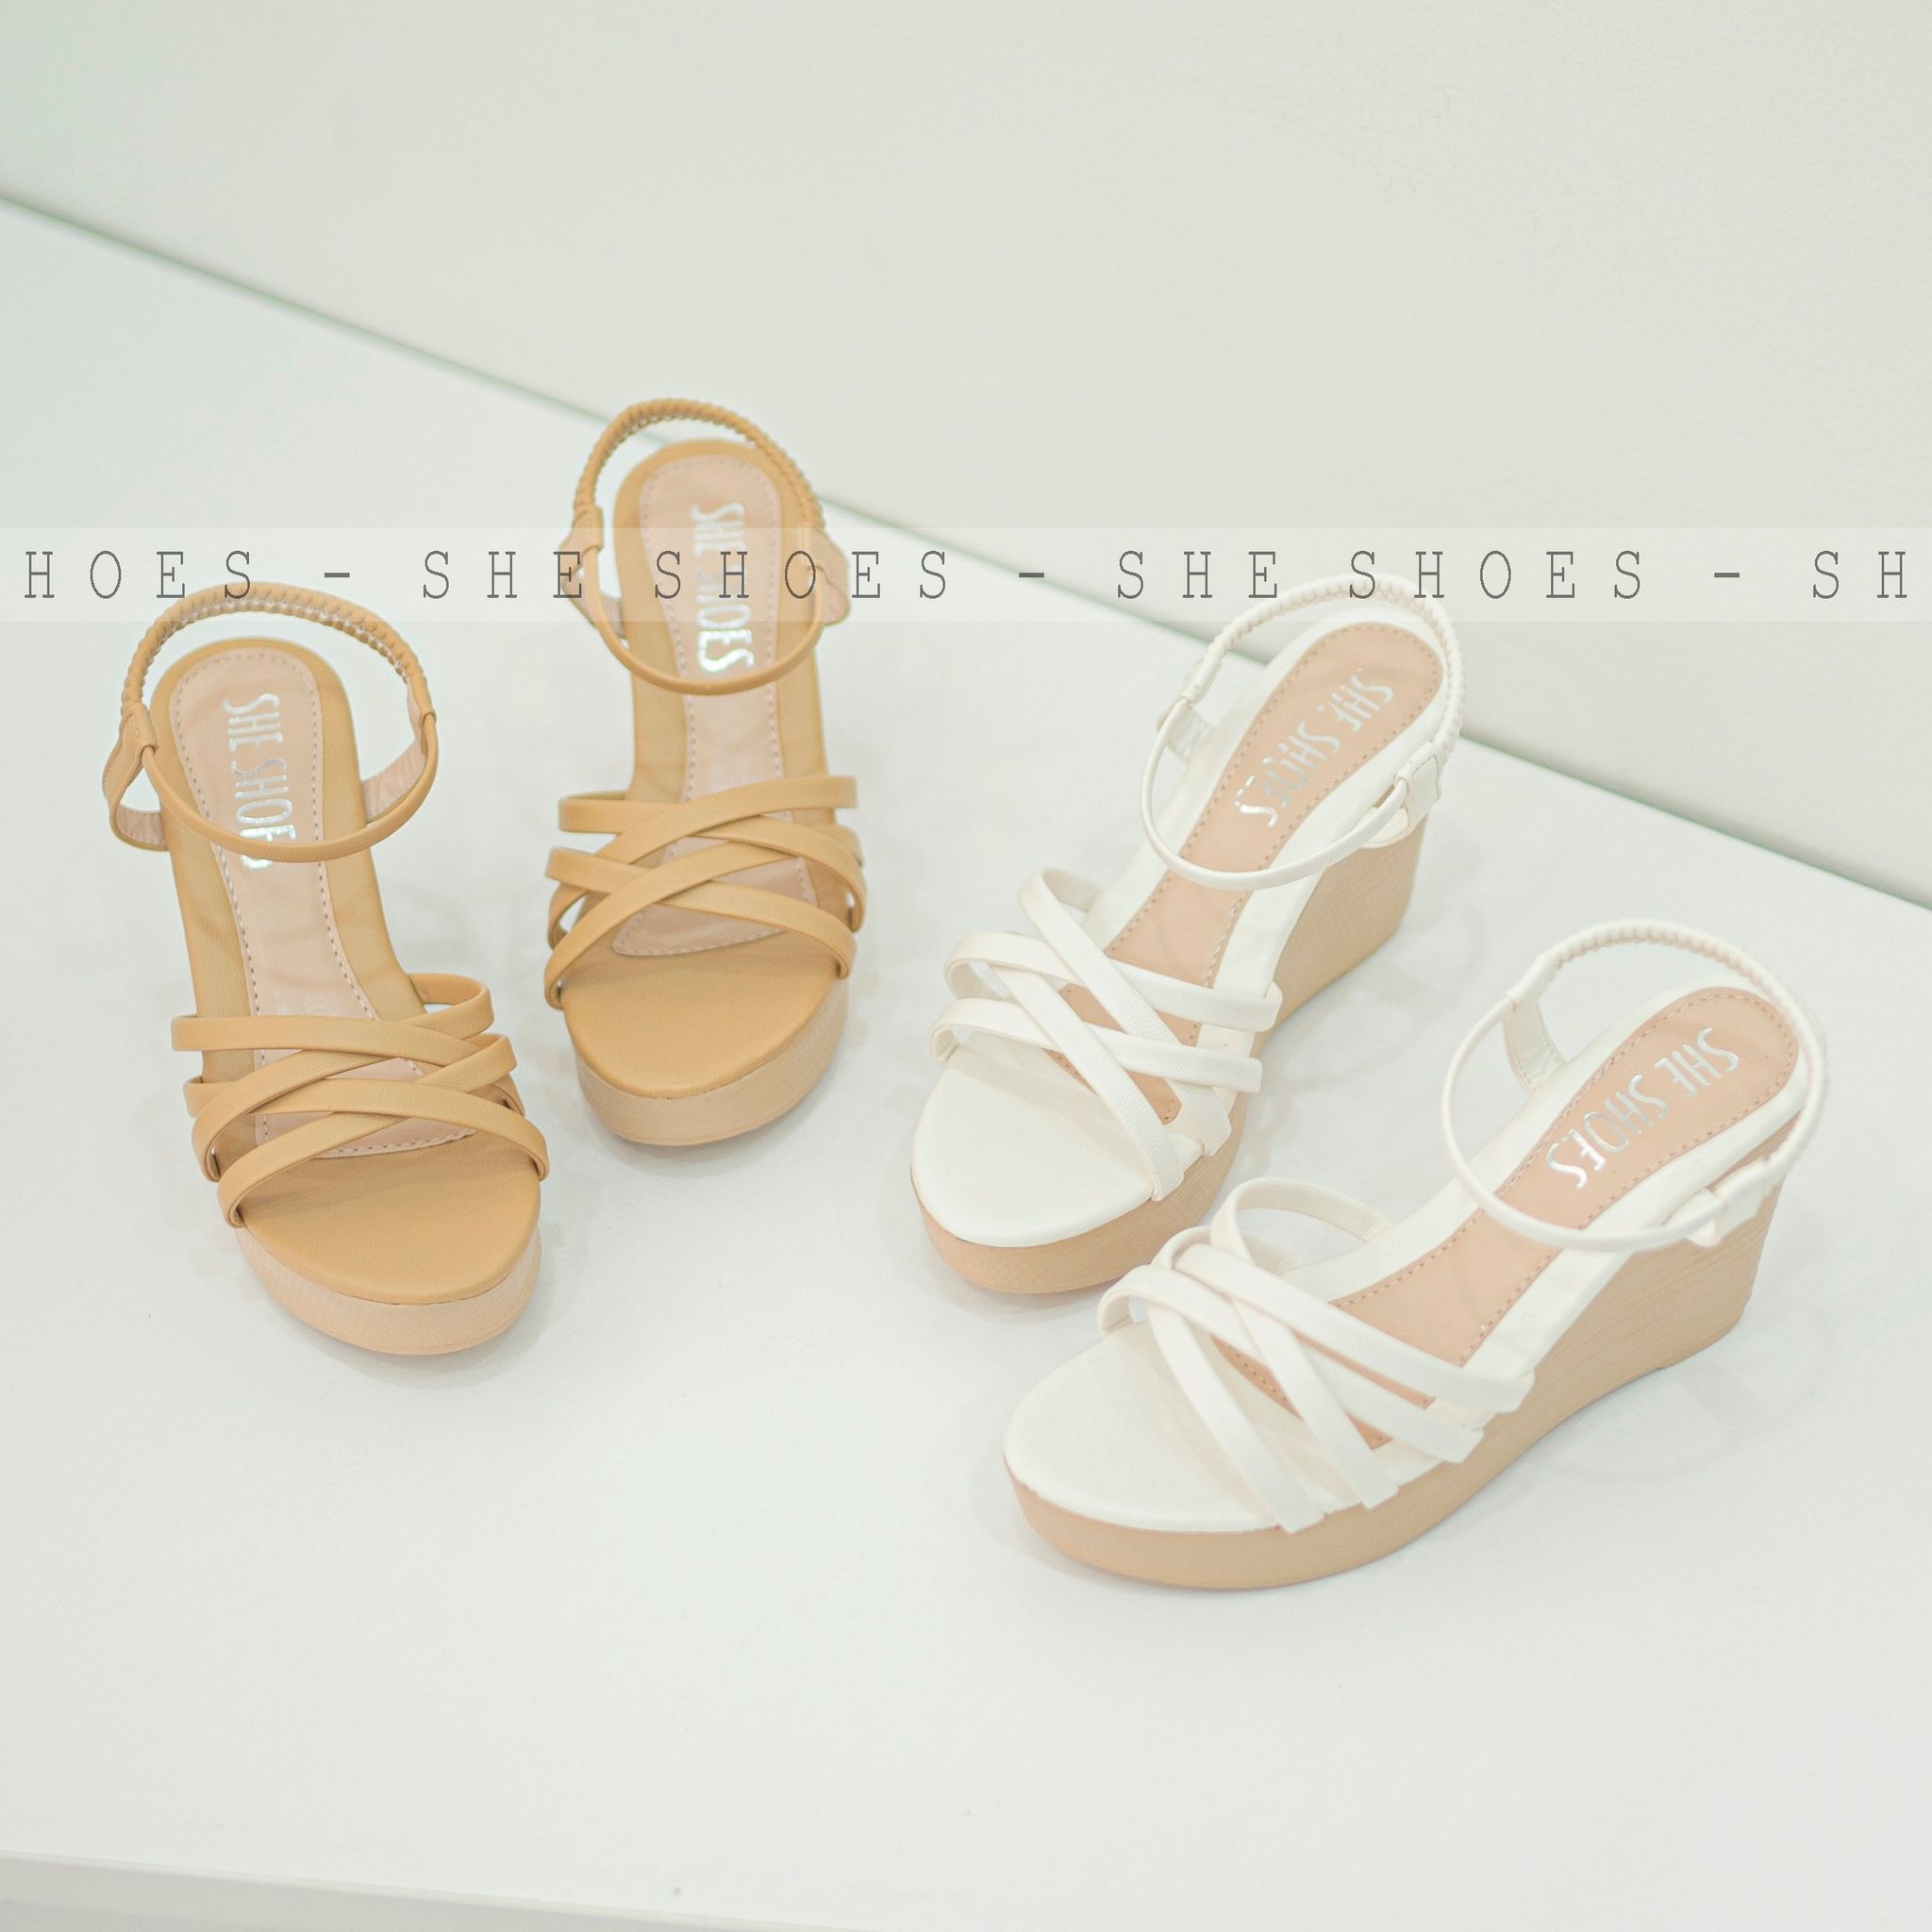 Giày sandal đế xuồng 9p siêu xinh, độc quyền bởi SHE SHOES - SDX09050